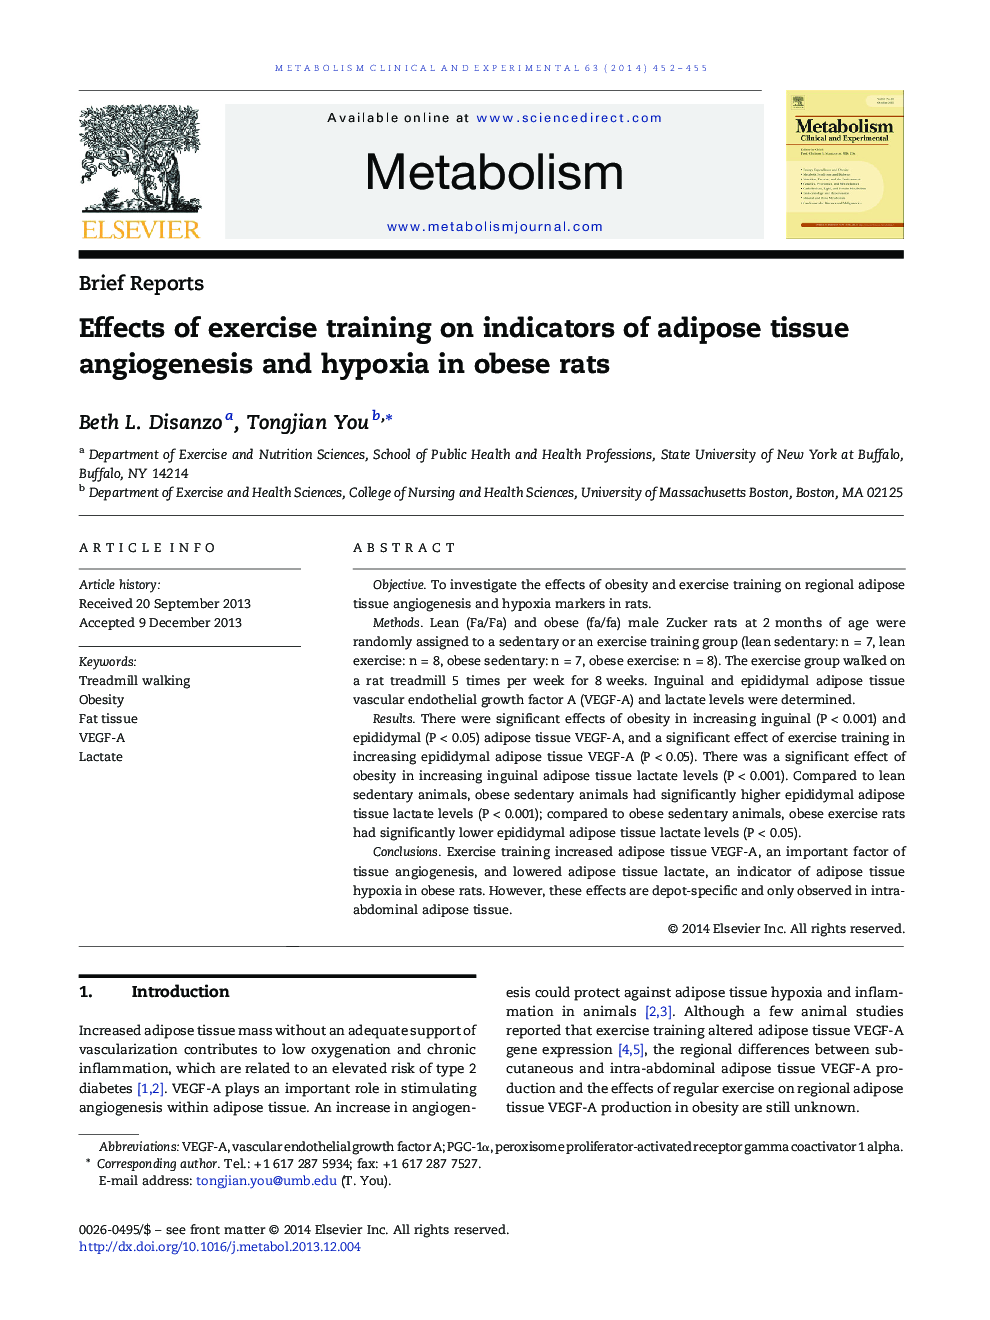 گزارش مختصر اثر تمرینات ورزشی بر شاخص های آنژیوژنز بافت چربی و هیپوکسیا در موش های چاق 